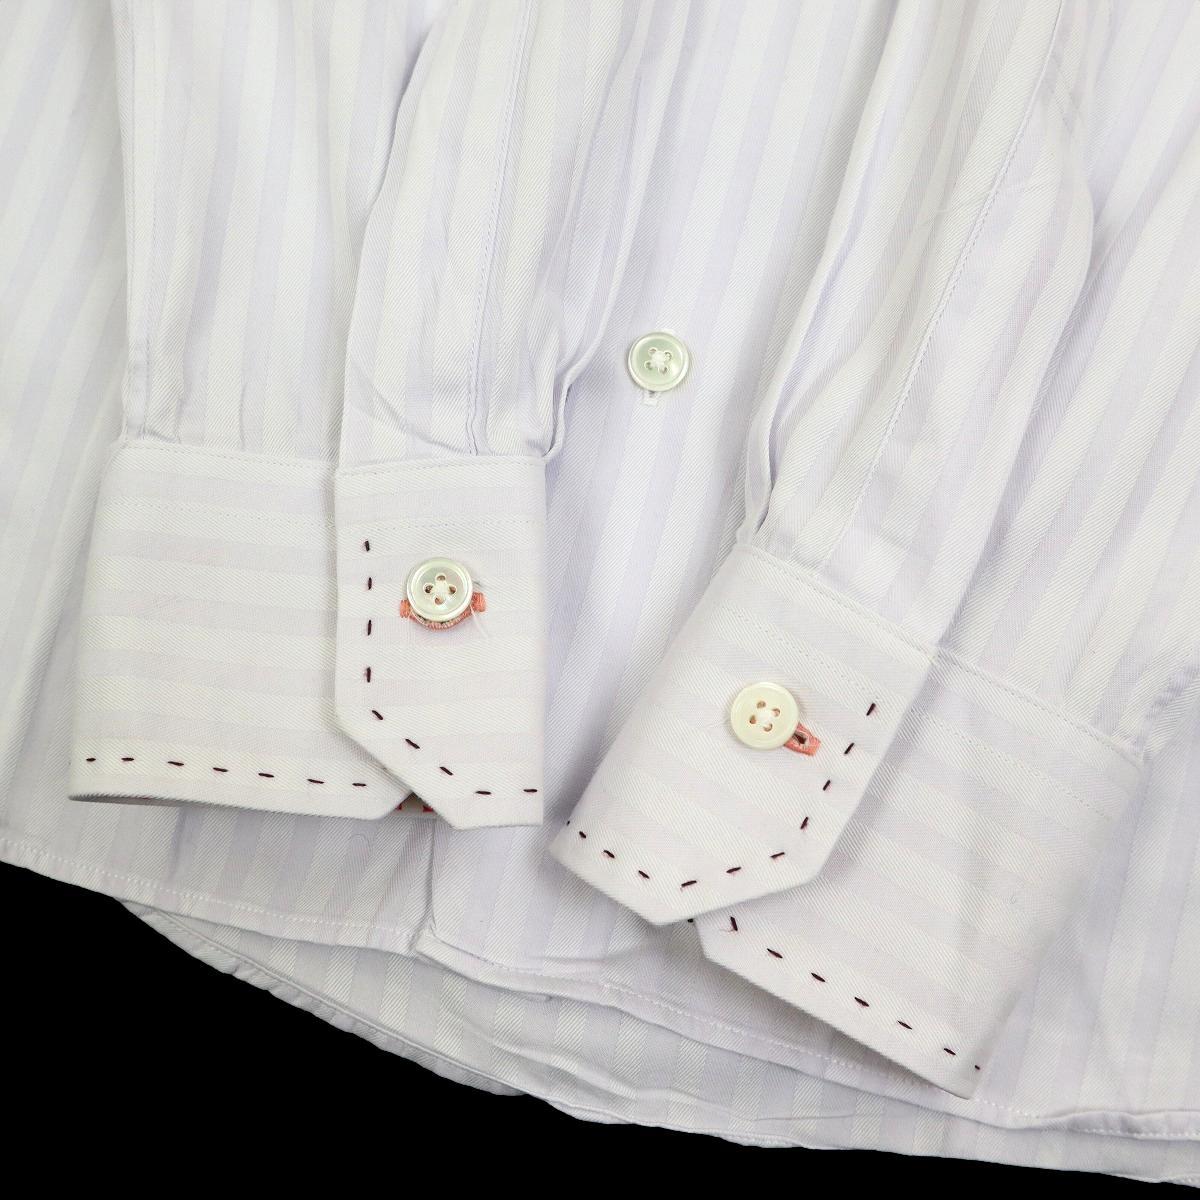 [ превосходный товар ]Paul Smith Paul Smith рубашка с длинным рукавом сорочка цветочный принт полоса размер S